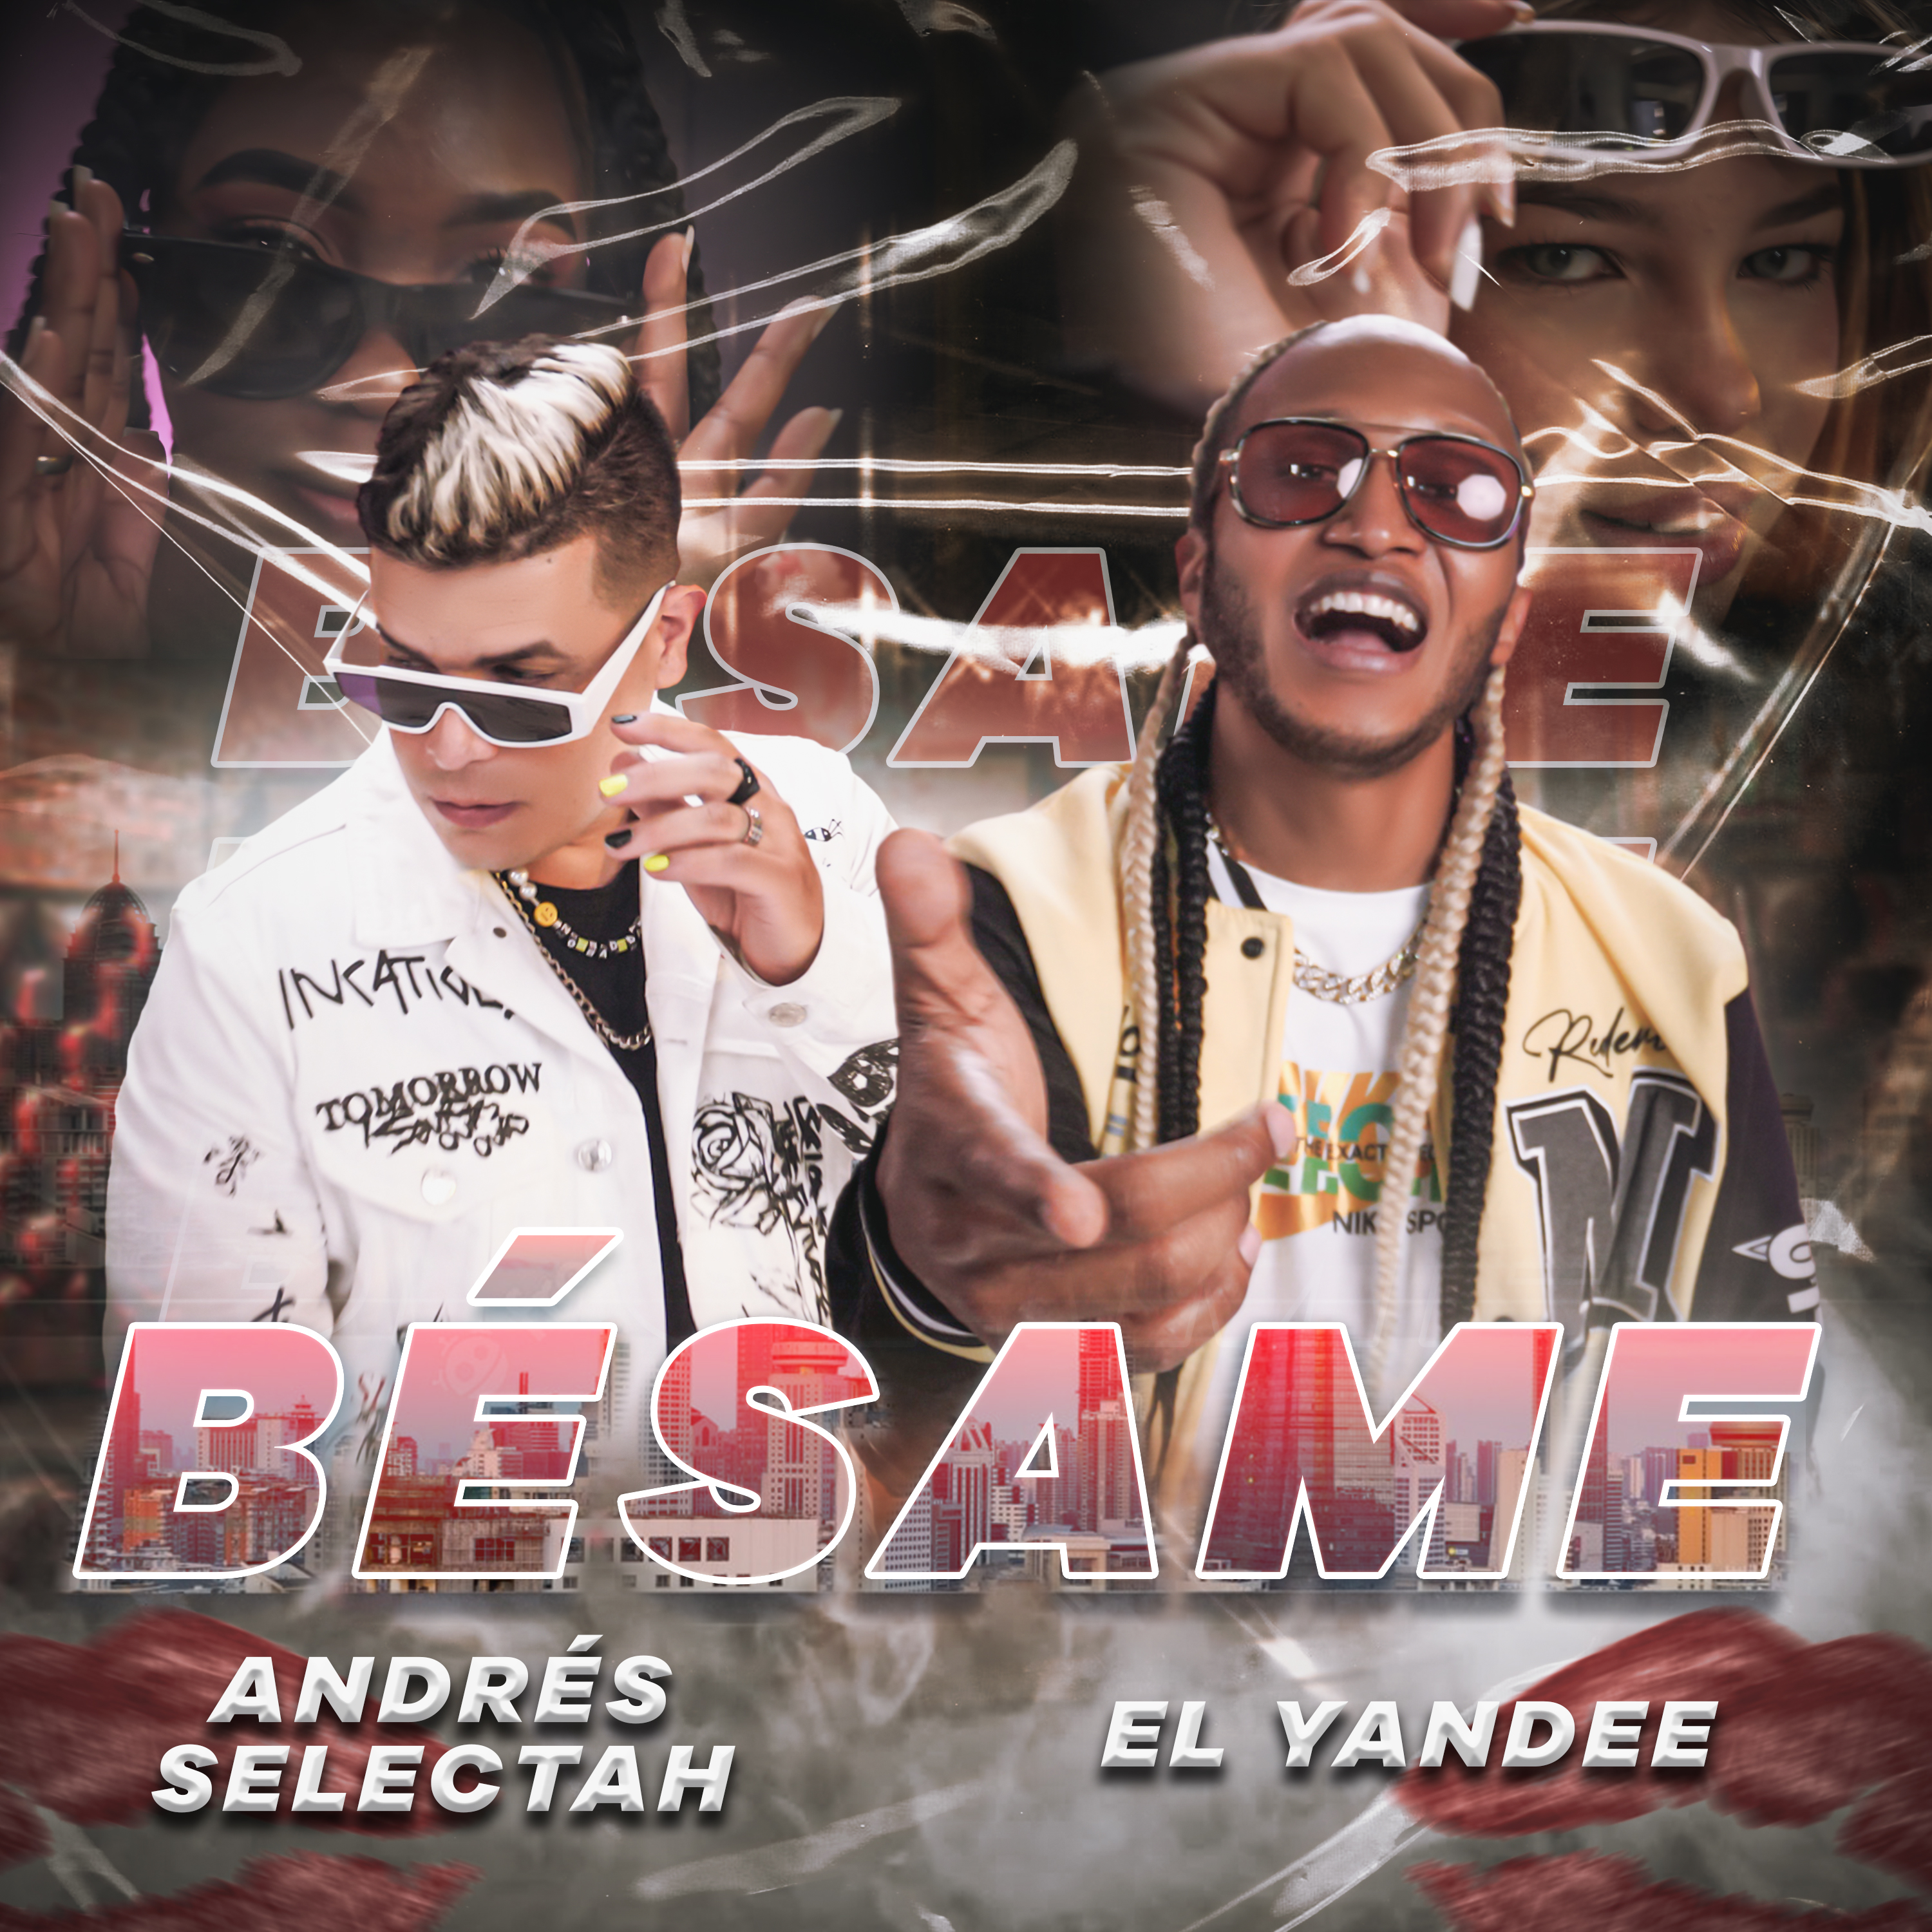 El Yandee con una mezcla de dance hall y música latina estrena su nueva canción “BÉSAME”